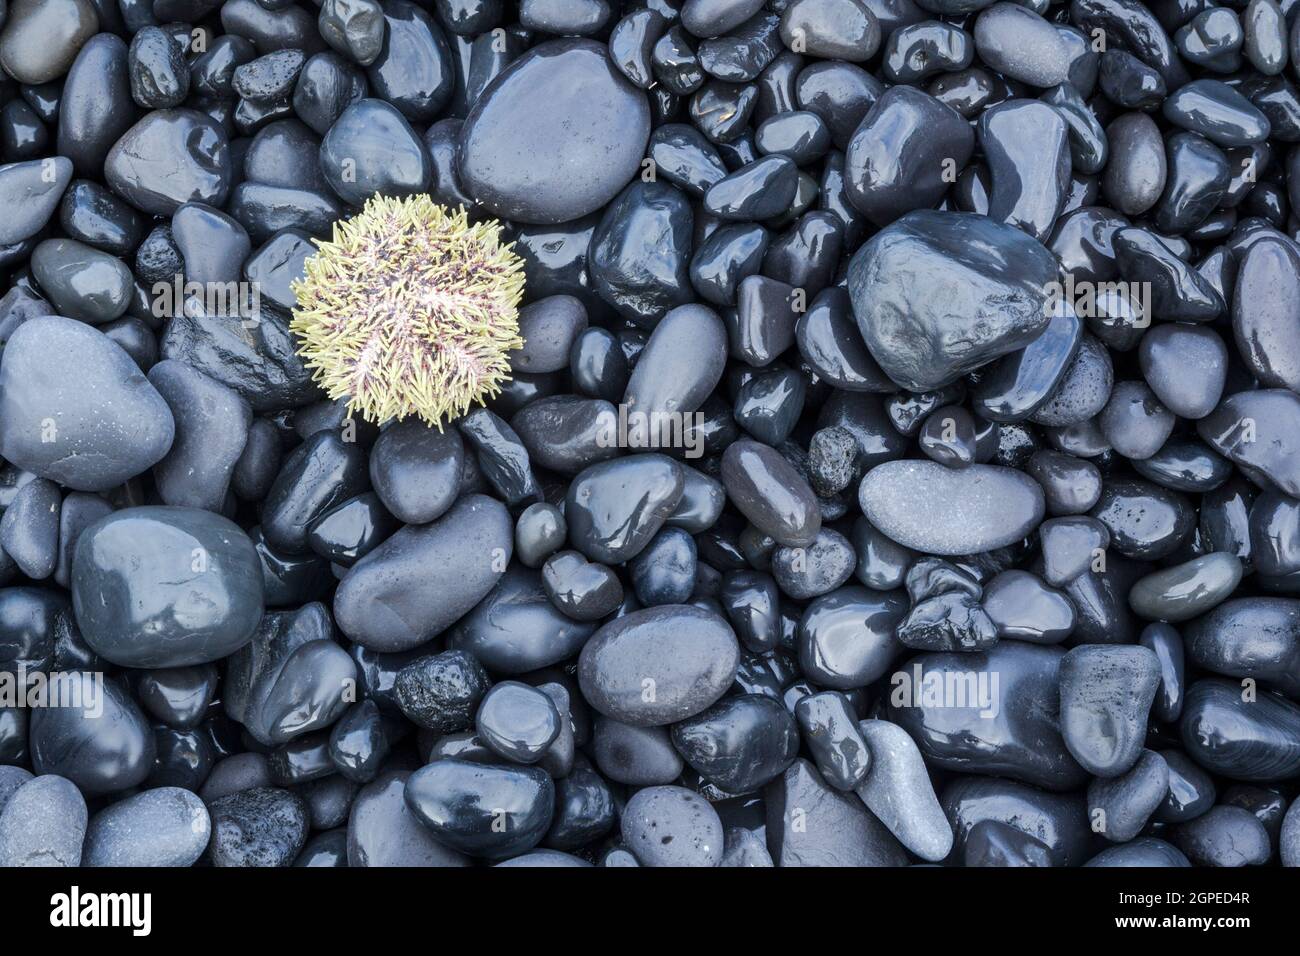 Riccio di mare, Stronglylocentrotus droebachiensis, su pietre bagnate Foto Stock